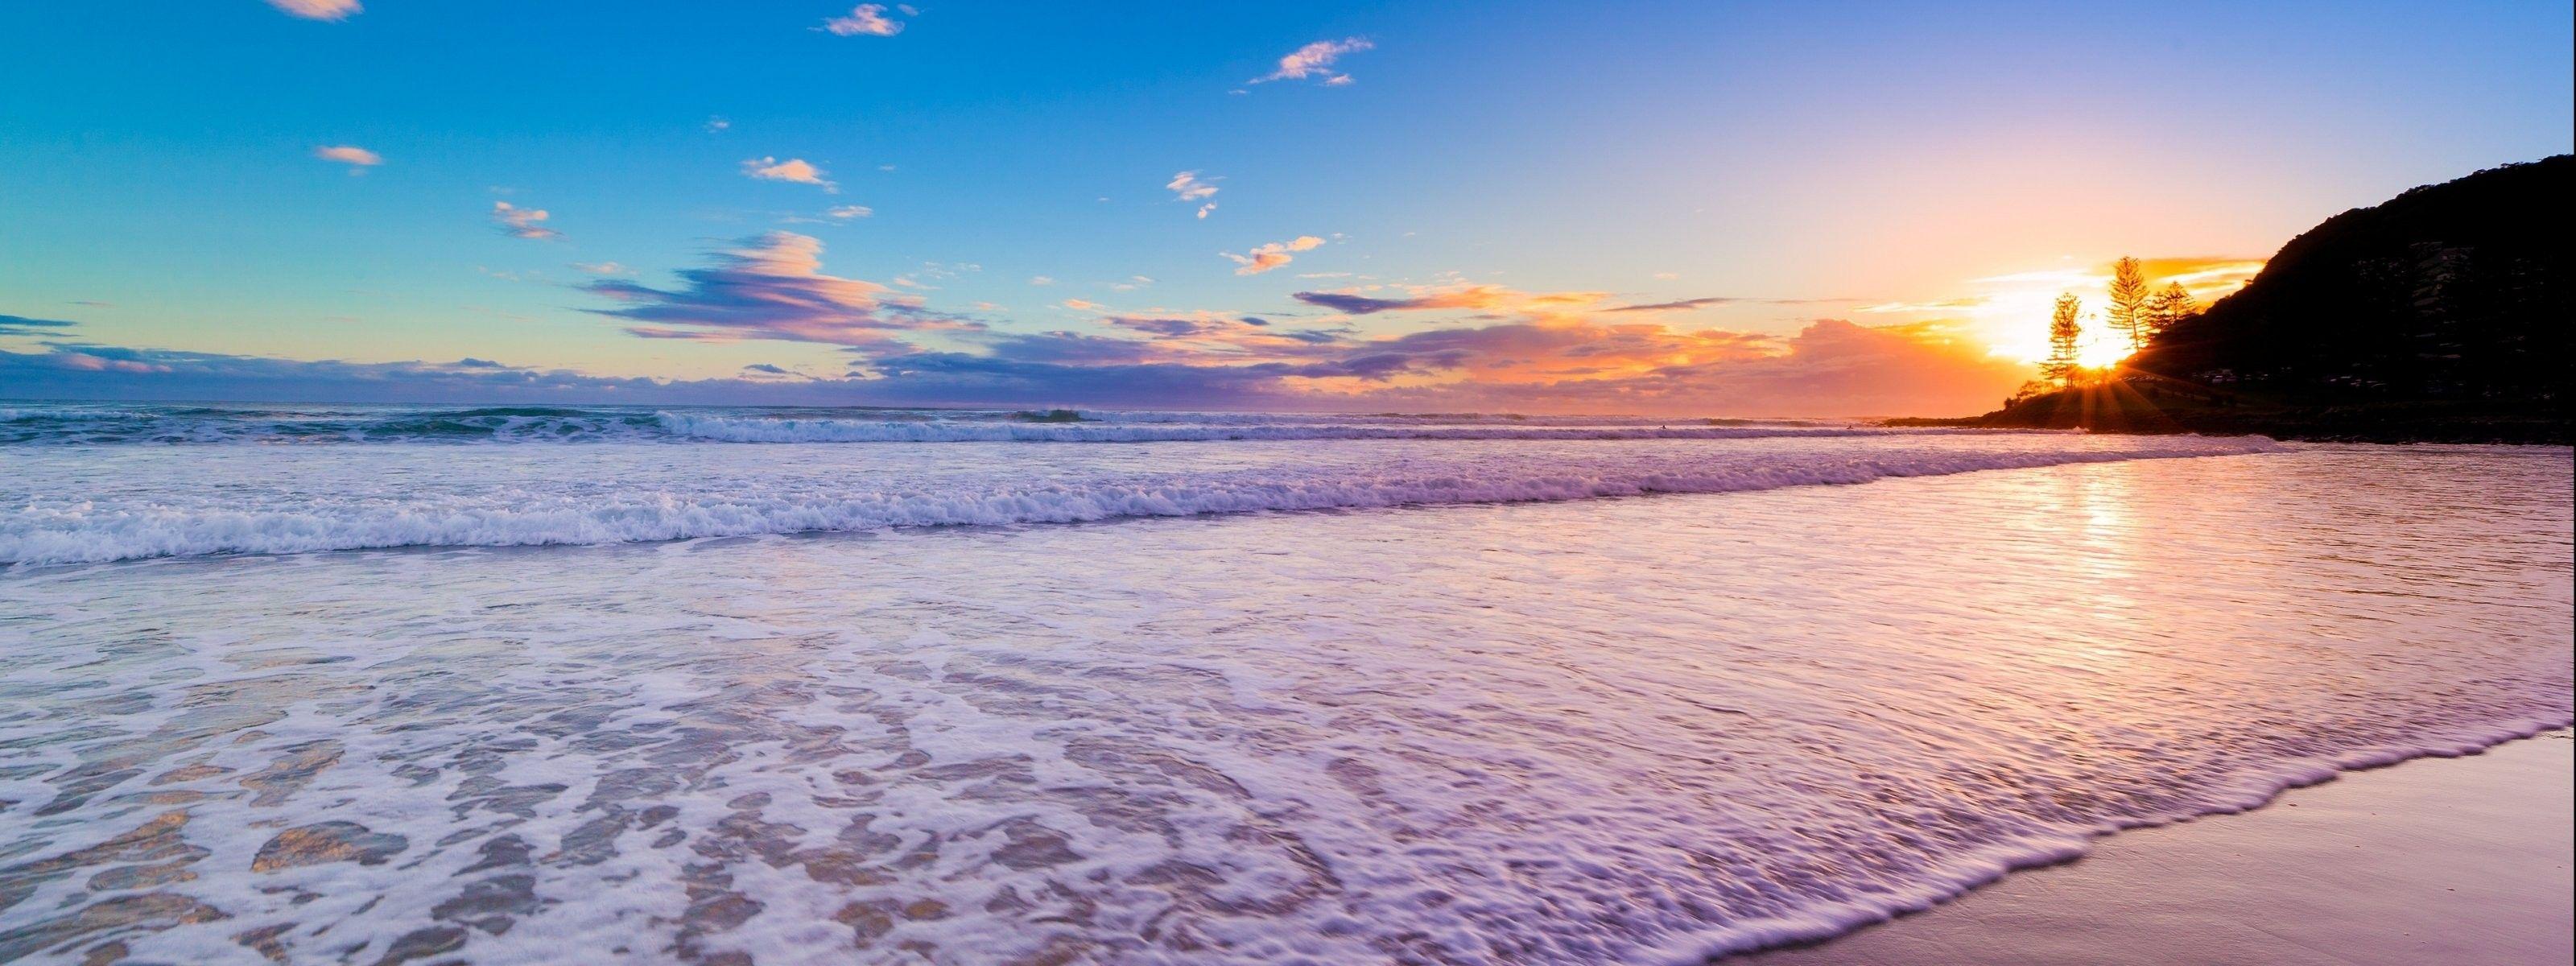 Hình nền bãi biển hoàng hôn: Cảm nhận sự yên tĩnh và thư thái với hình nền bãi biển hoàng hôn. Những tia nắng dịu dàng chiếu xuống mặt biển tạo nên không gian tuyệt vời, giống như đang tận hưởng kỳ nghỉ tuyệt vời trên bờ biển. Nó sẽ khiến bạn cảm thấy thư giãn và thoải mái khi nhìn vào màn hình của mình.